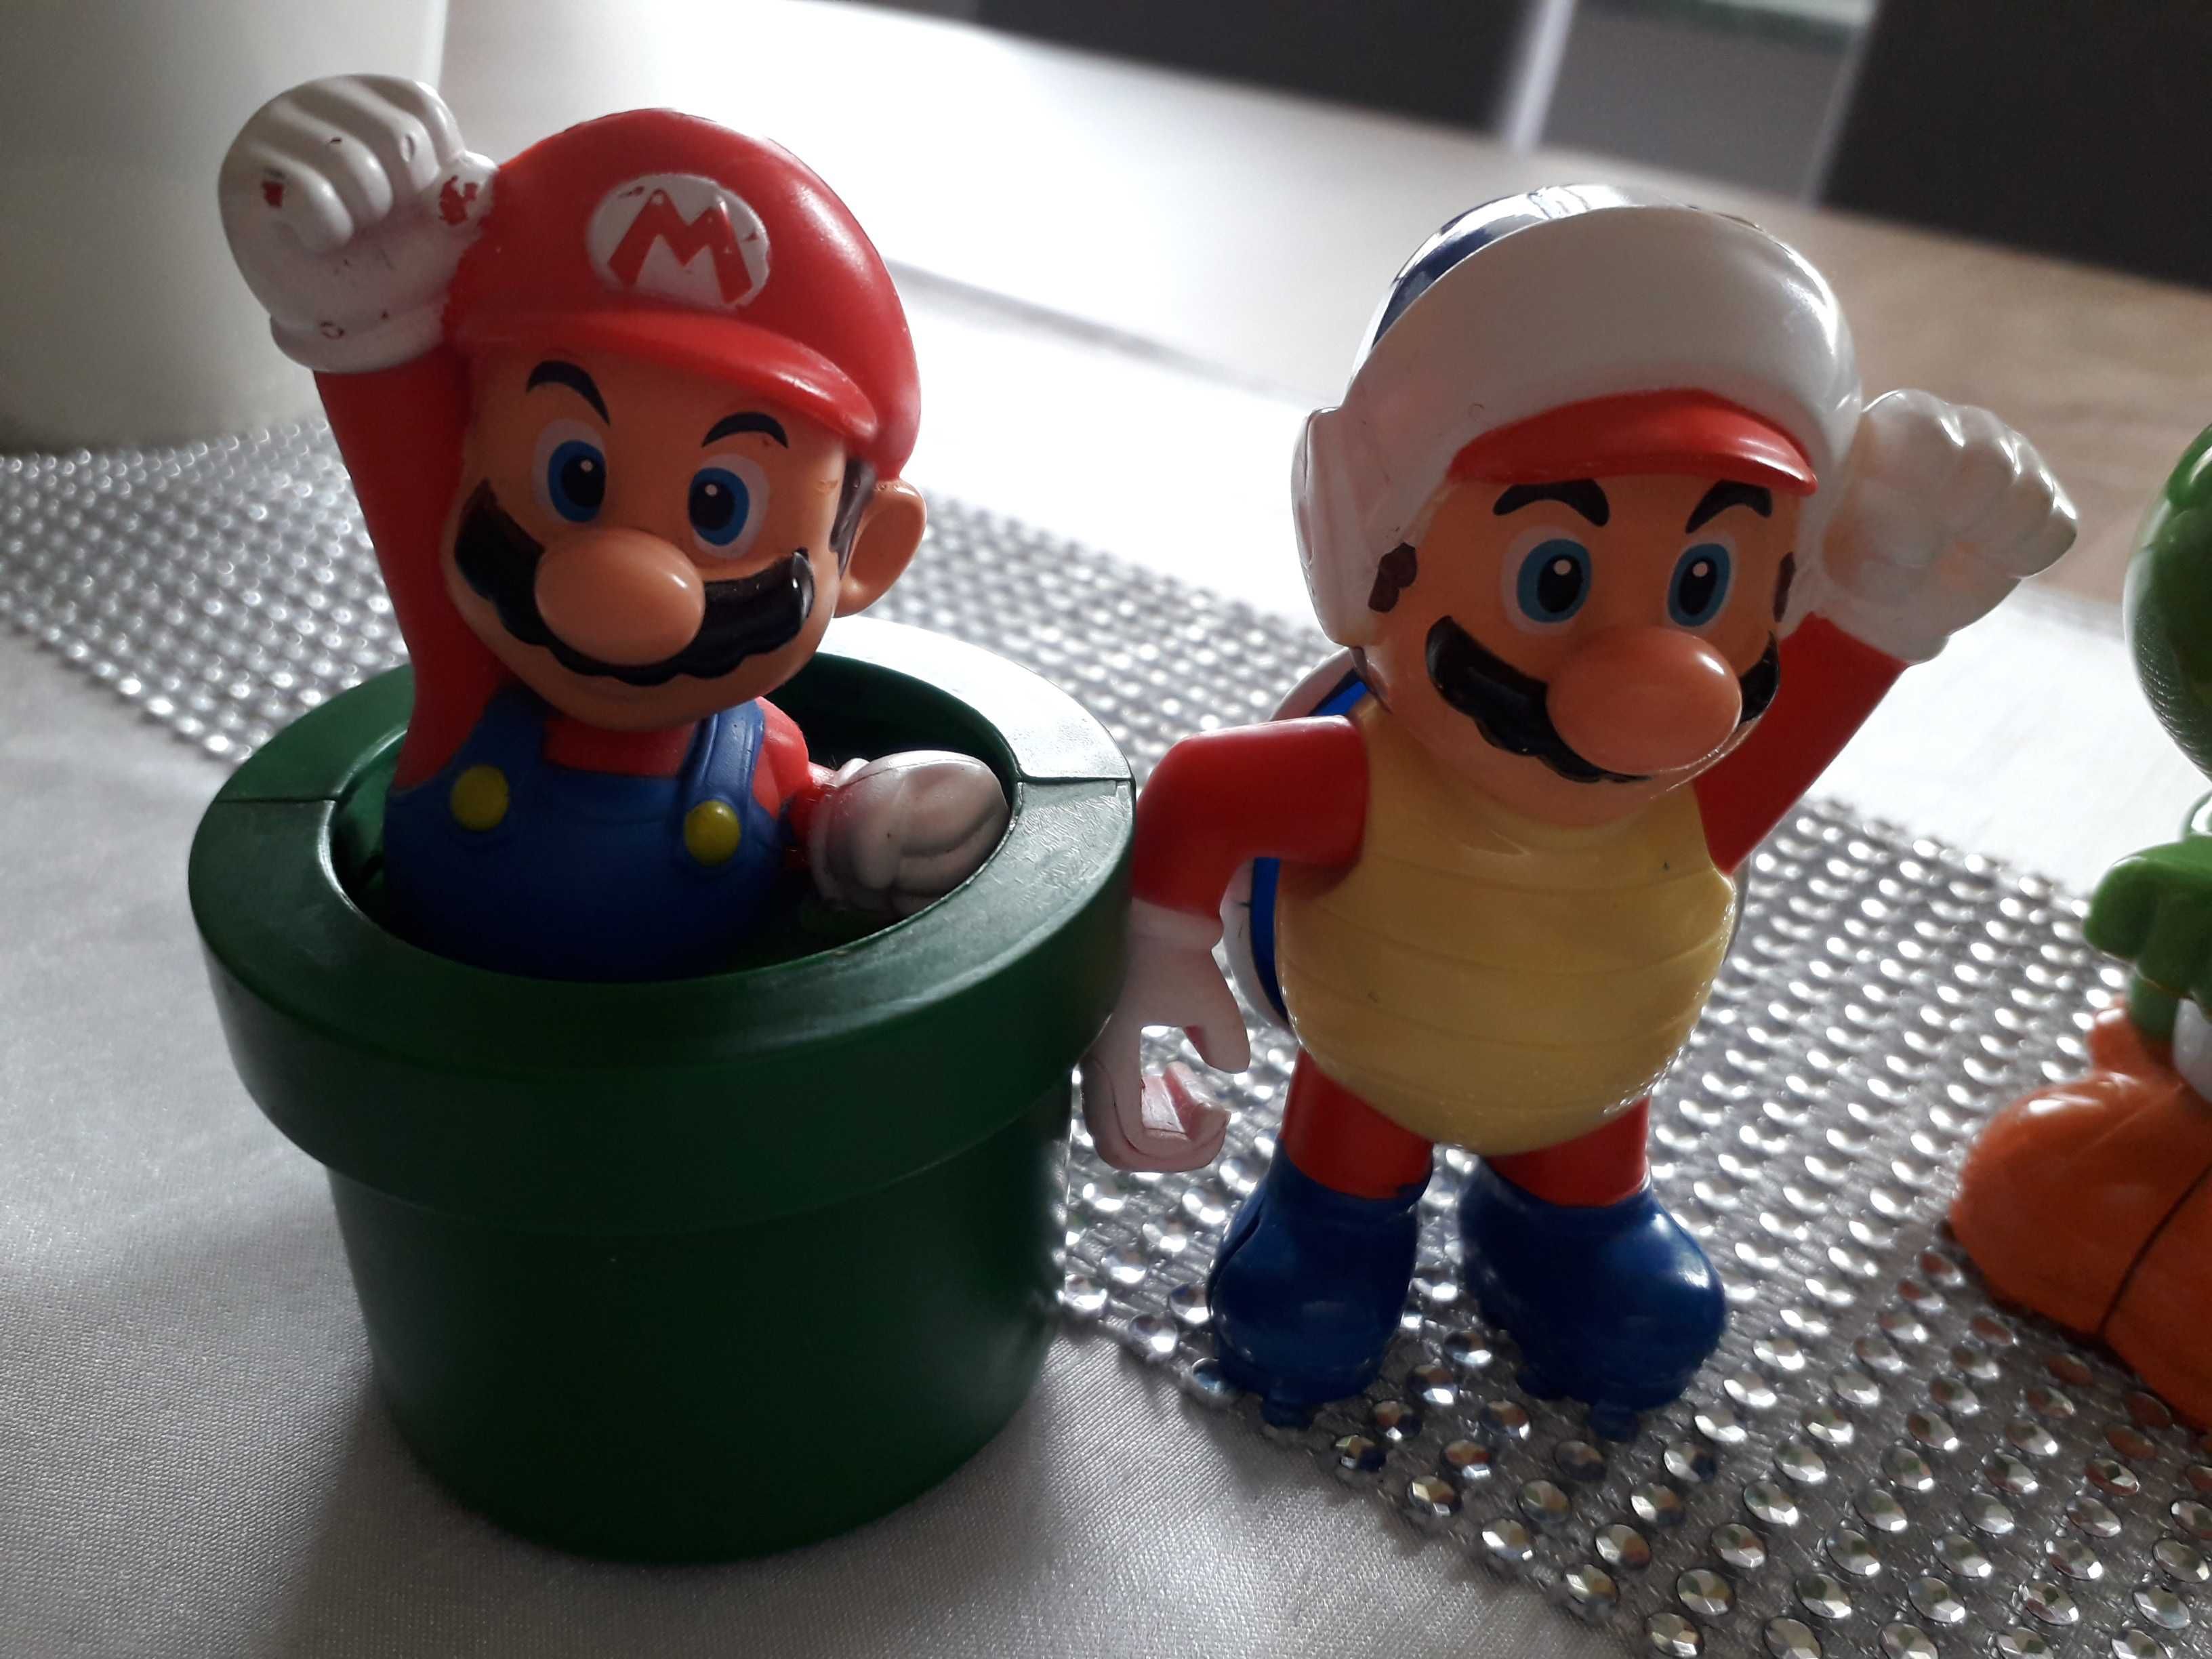 Figurki Super Mario. Nintendo 2013/2014, wysokość 8,5cm